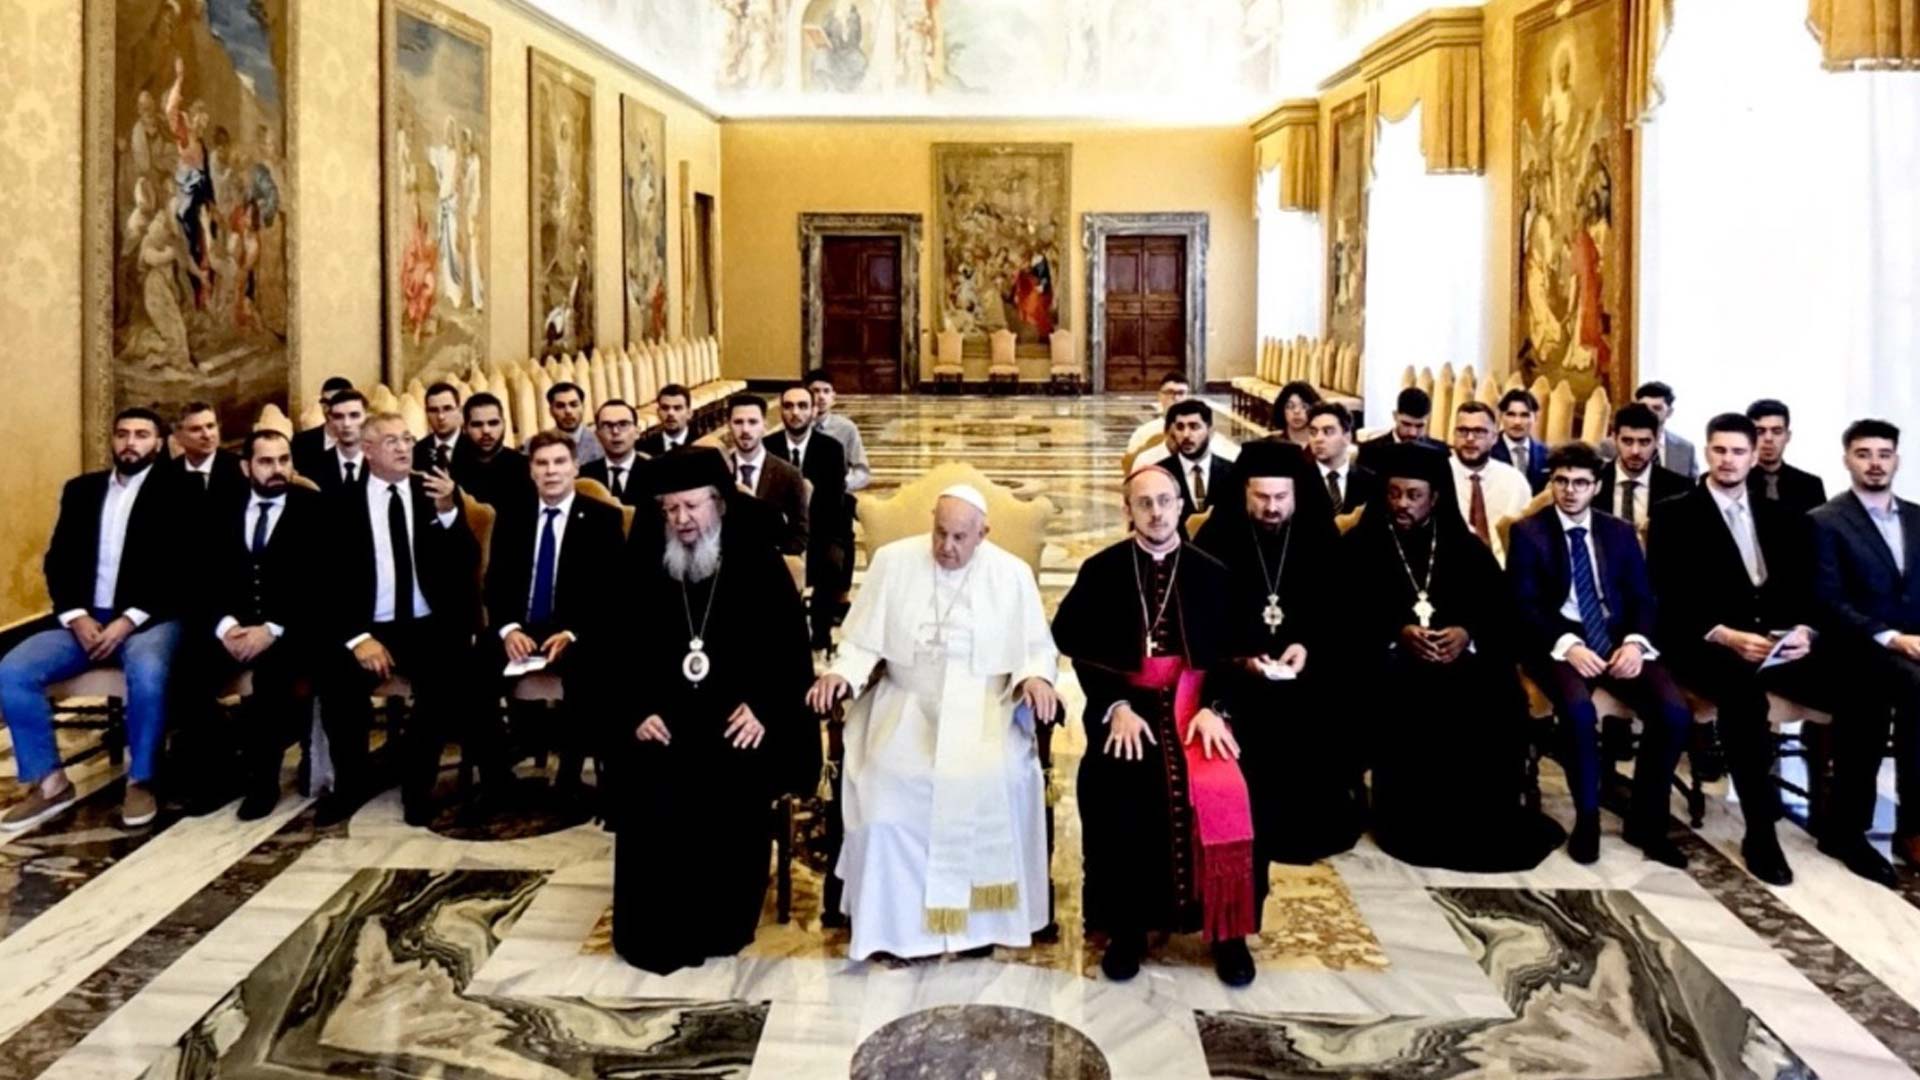 Πάπας Φραγκίσκος: Προς Μητροπολίτη Φαναρίου Αγαθάγγελο - Οι νέοι μπορούν να σπάσουν τα δεσμά και τις προκαταλήψεις